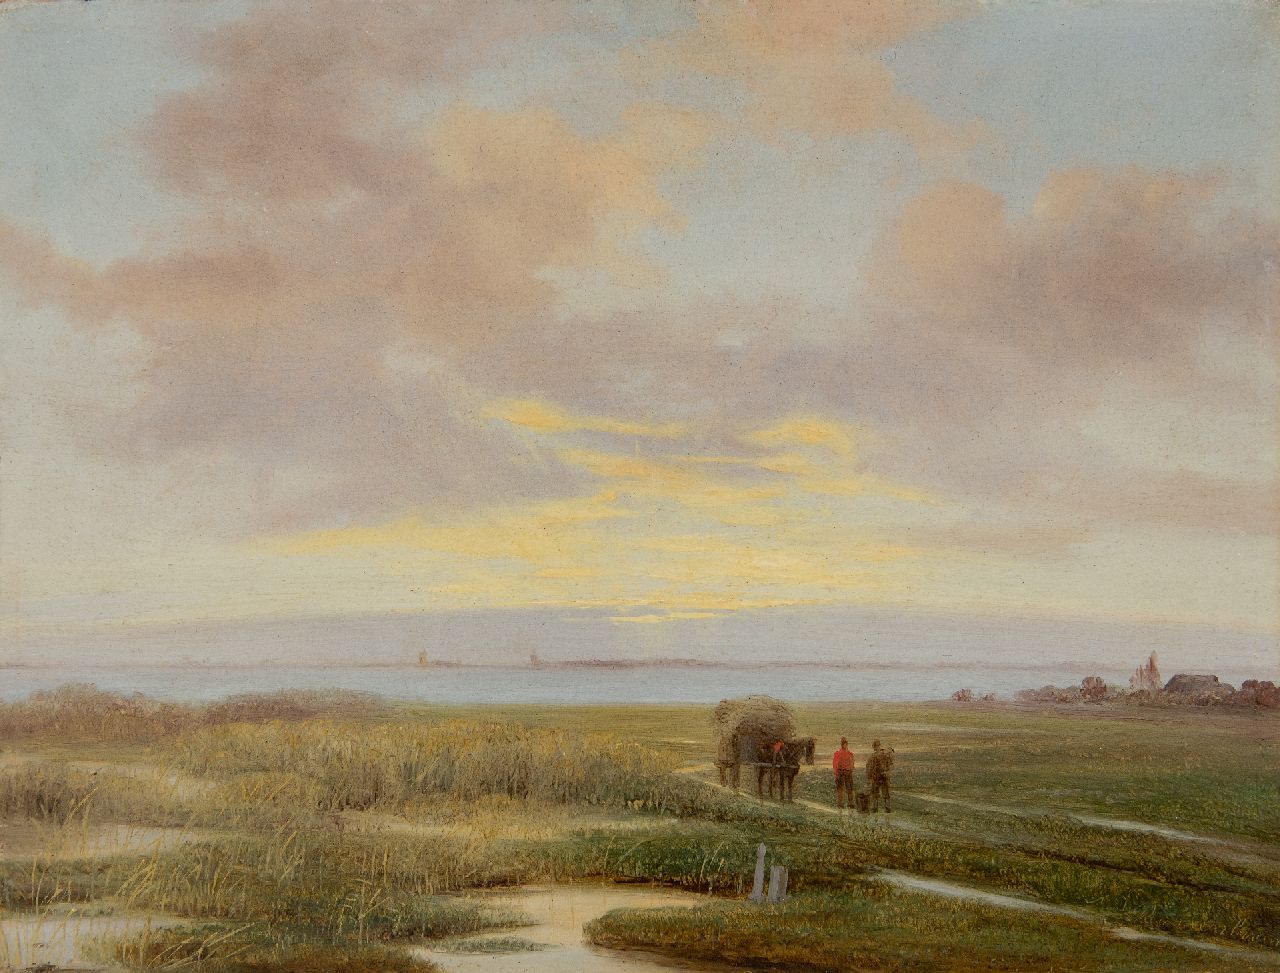 Roosenboom N.J.  | Nicolaas Johannes Roosenboom | Schilderijen te koop aangeboden | Rietsnijders met paard en wagen in weids landschap, olieverf op paneel 20,5 x 27,0 cm, gesigneerd rechtsonder